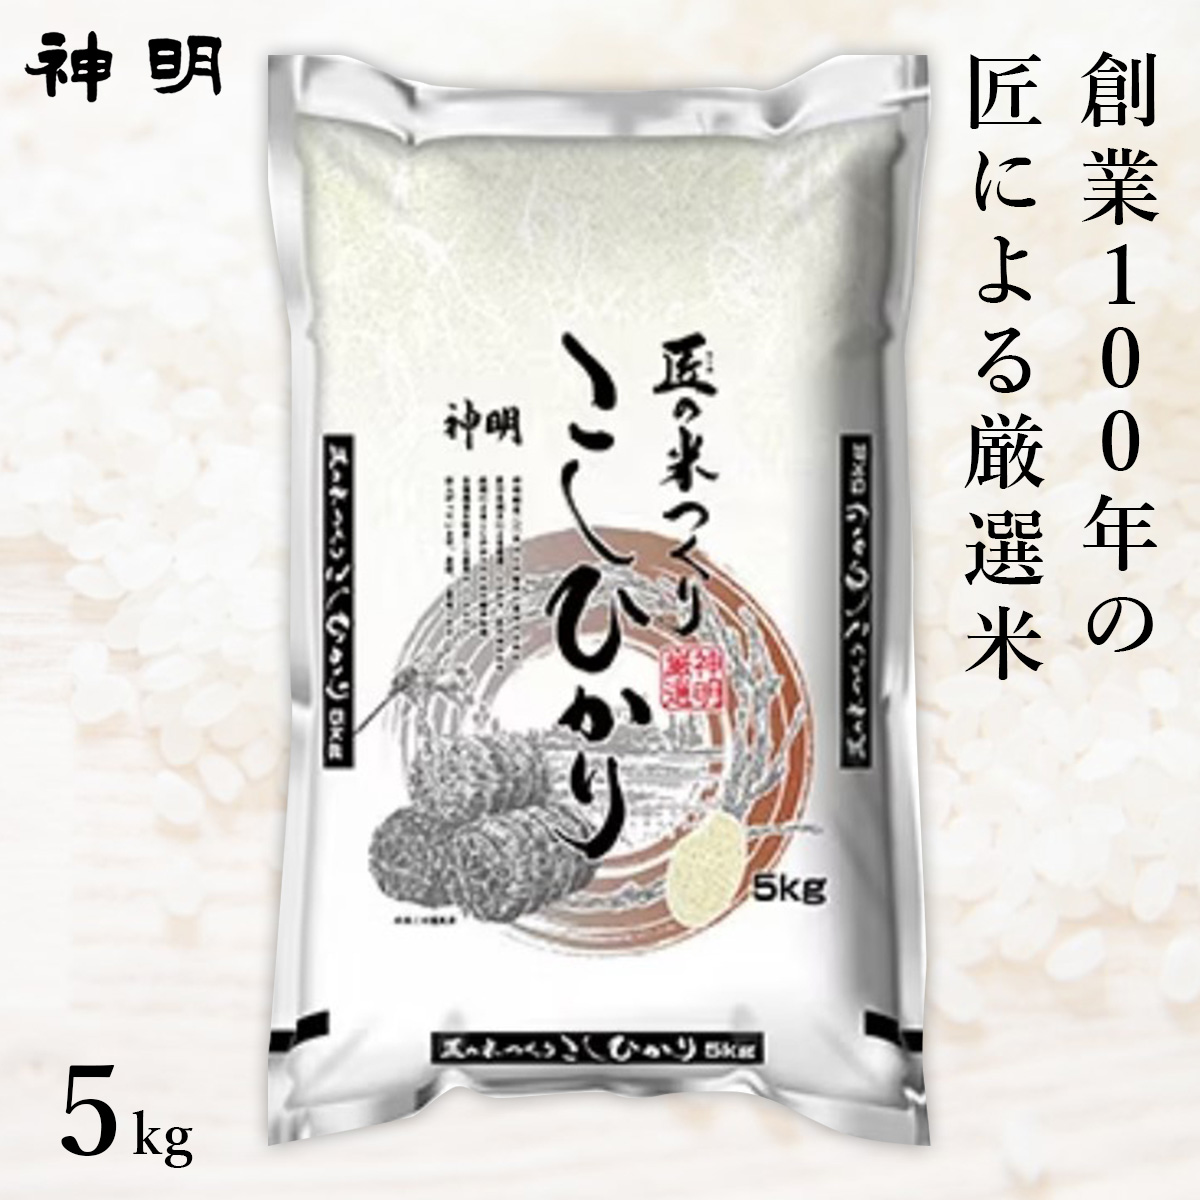 ○匠のお米 コシヒカリ 5kg(1袋)